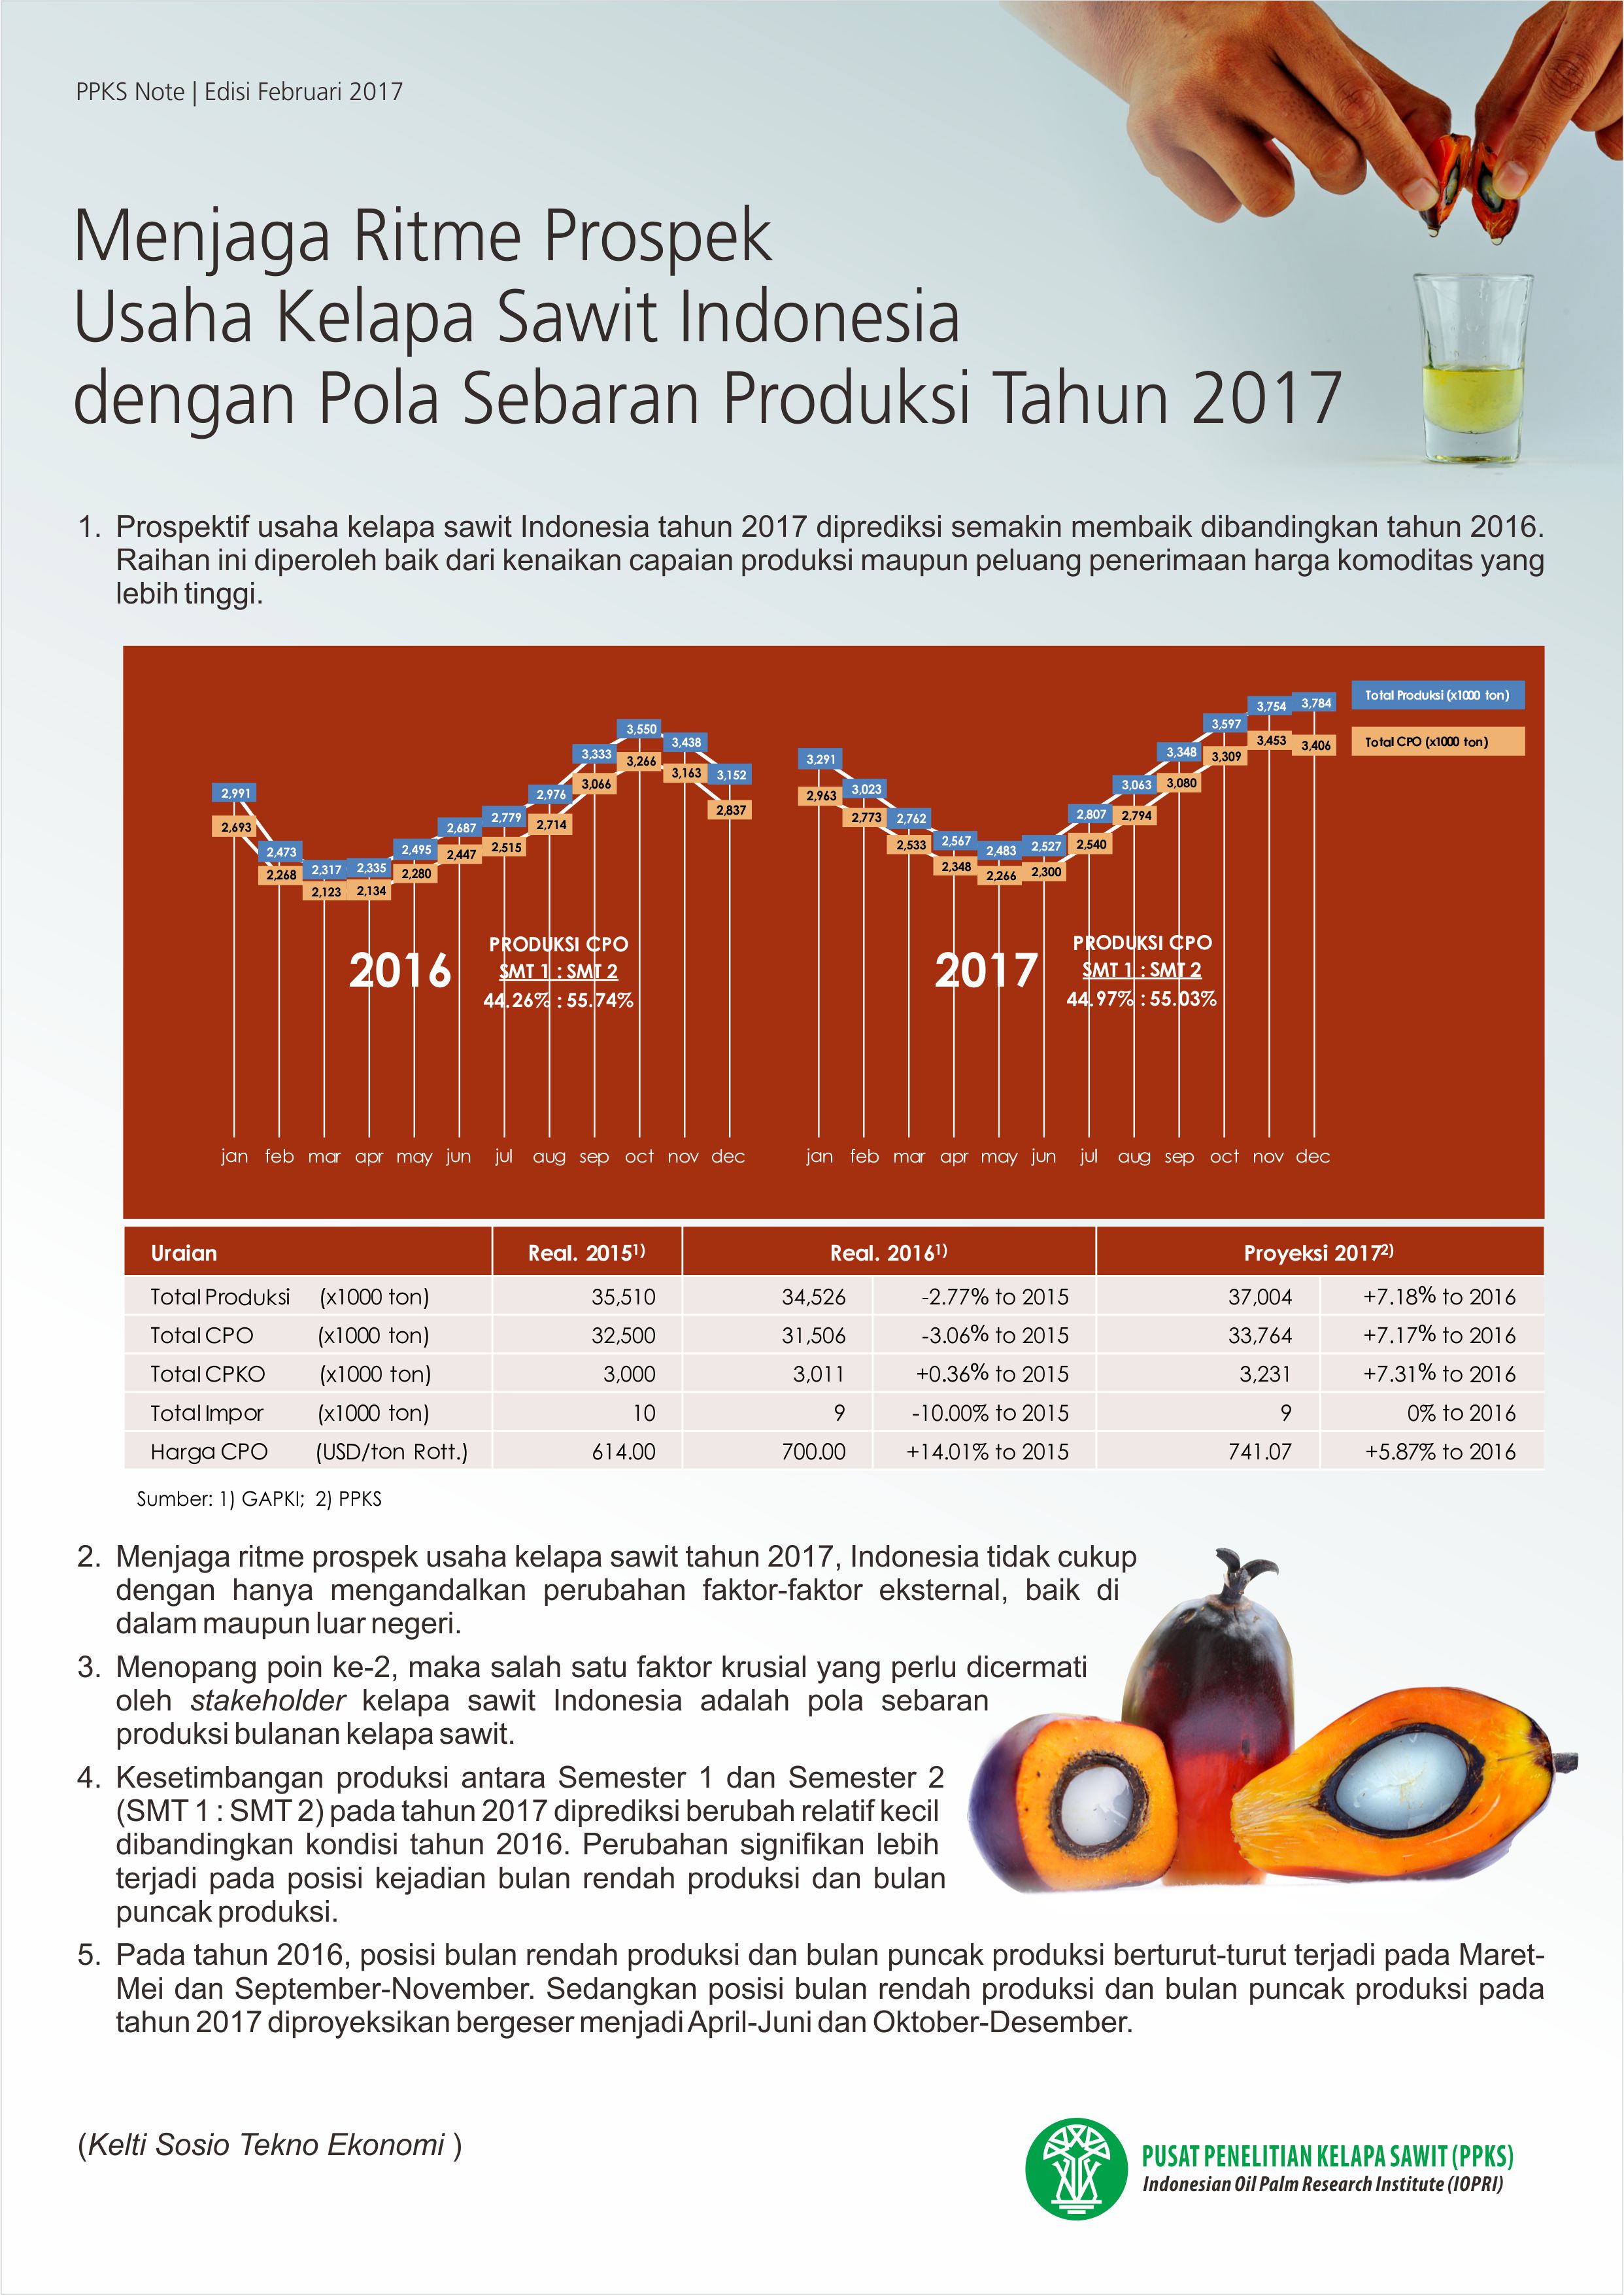 EDISI FEBRUARI 2017 - Menjaga Ritme Prospek Usaha Kelapa Sawit Indonesia...